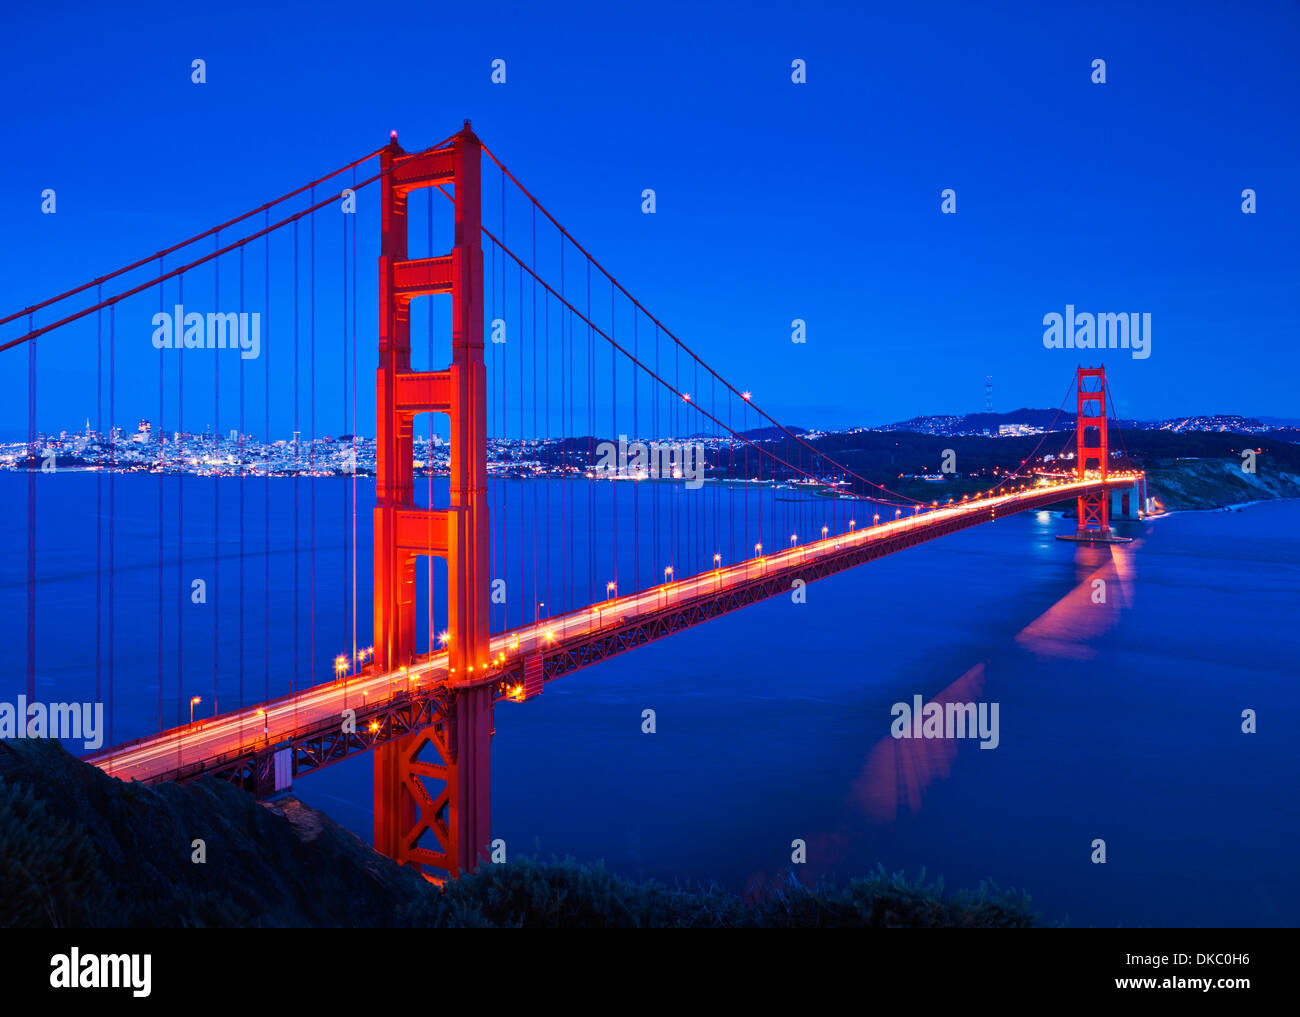 Puente Golden Gate de San Francisco en la noche con semáforo senderos a través del puente San Francisco, California, EE.UU. Foto de stock